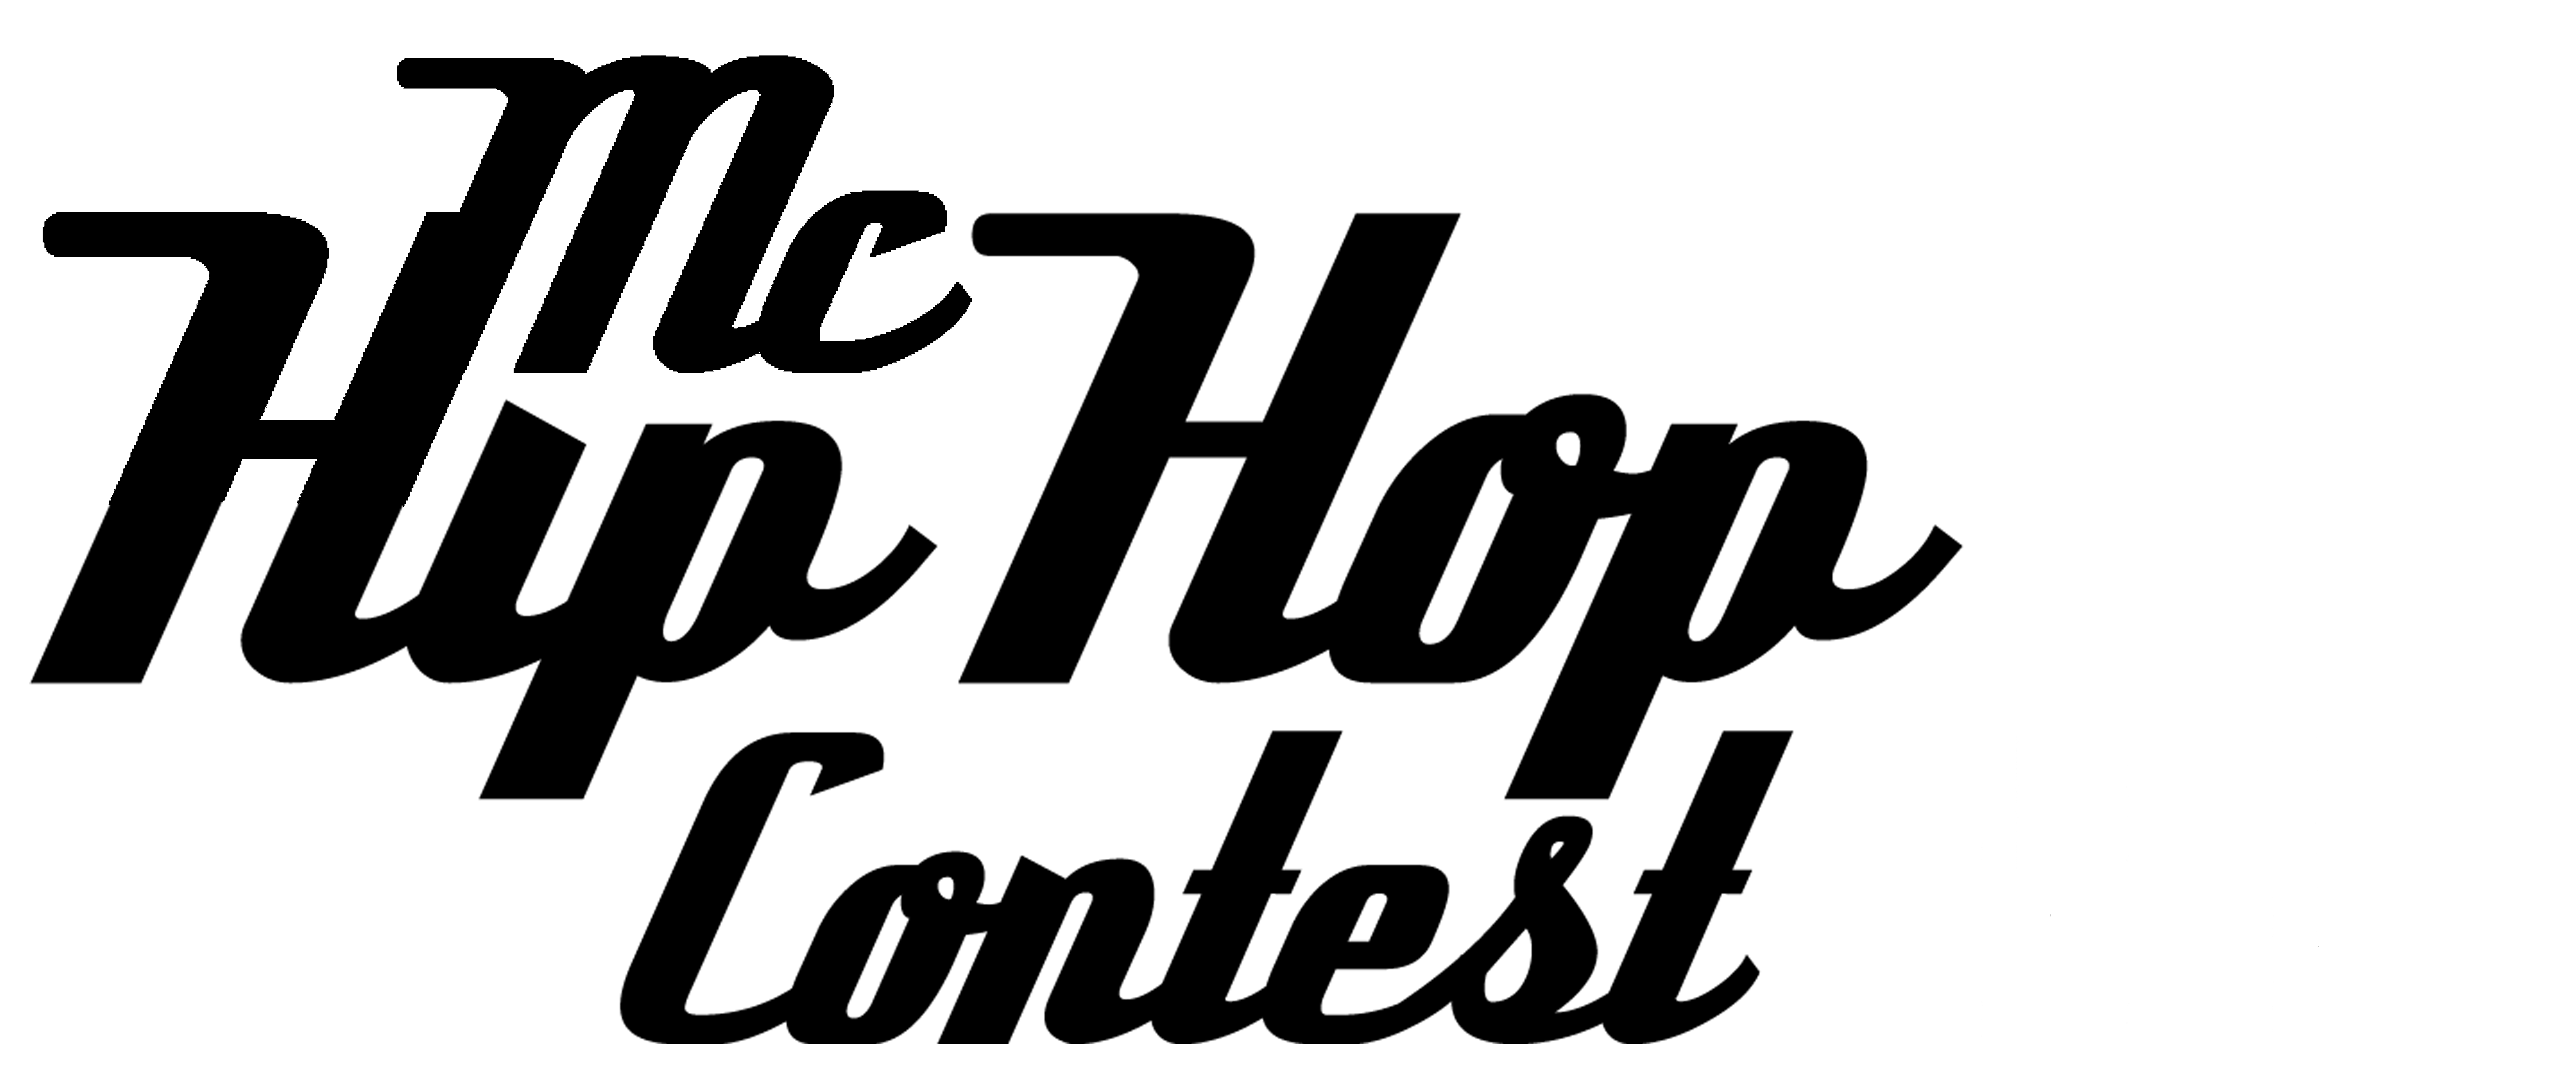 Mc hip hop contest